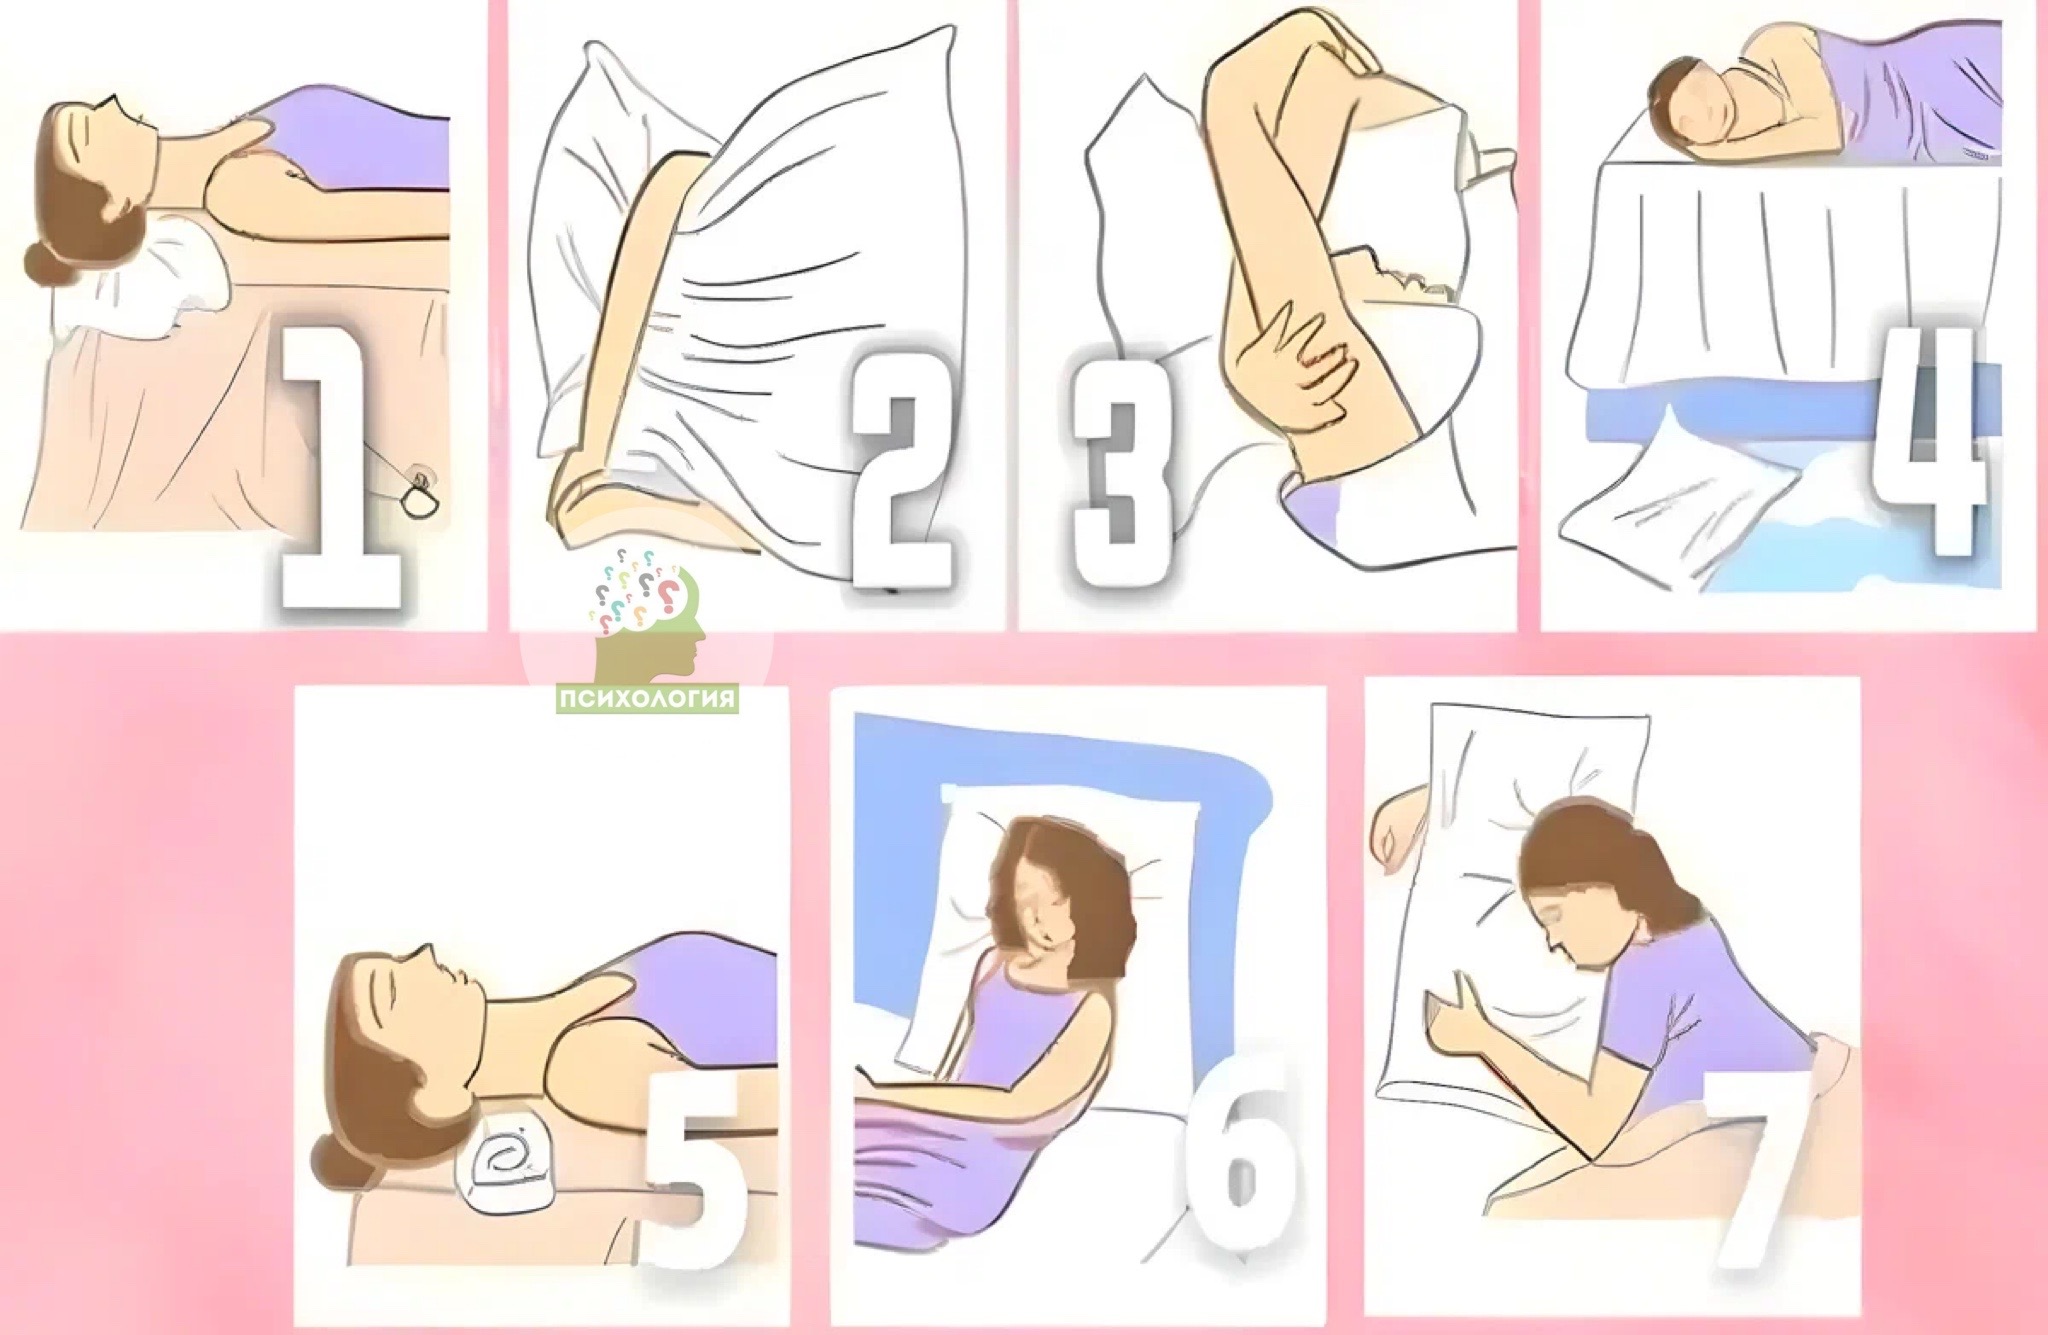 оргазм во сне во время беременности фото 109